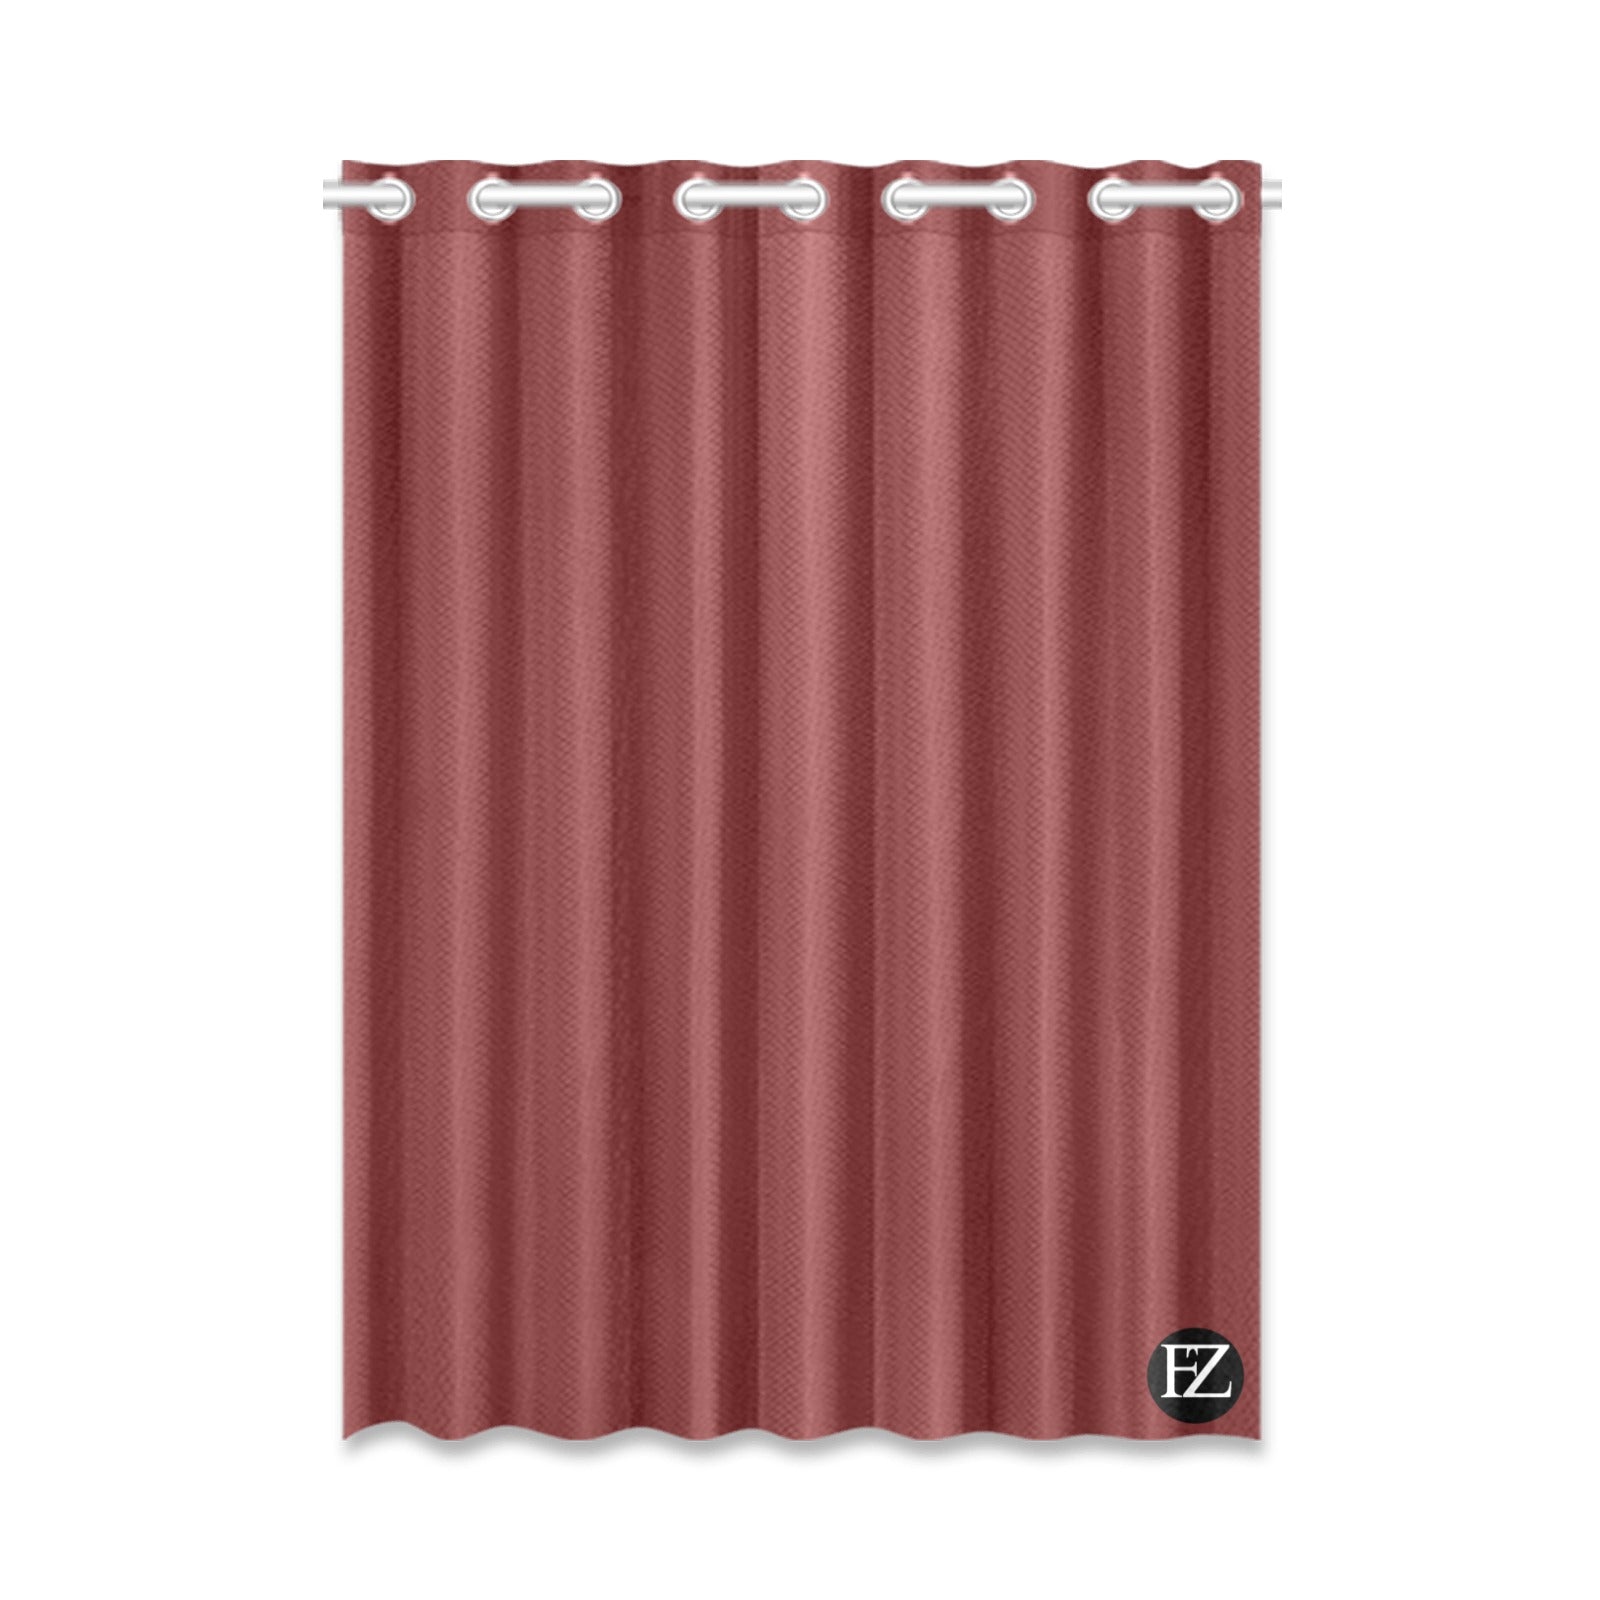 fz window curtain one size / fz room curtains - burgundy window curtain 52" x 72" (one piece)